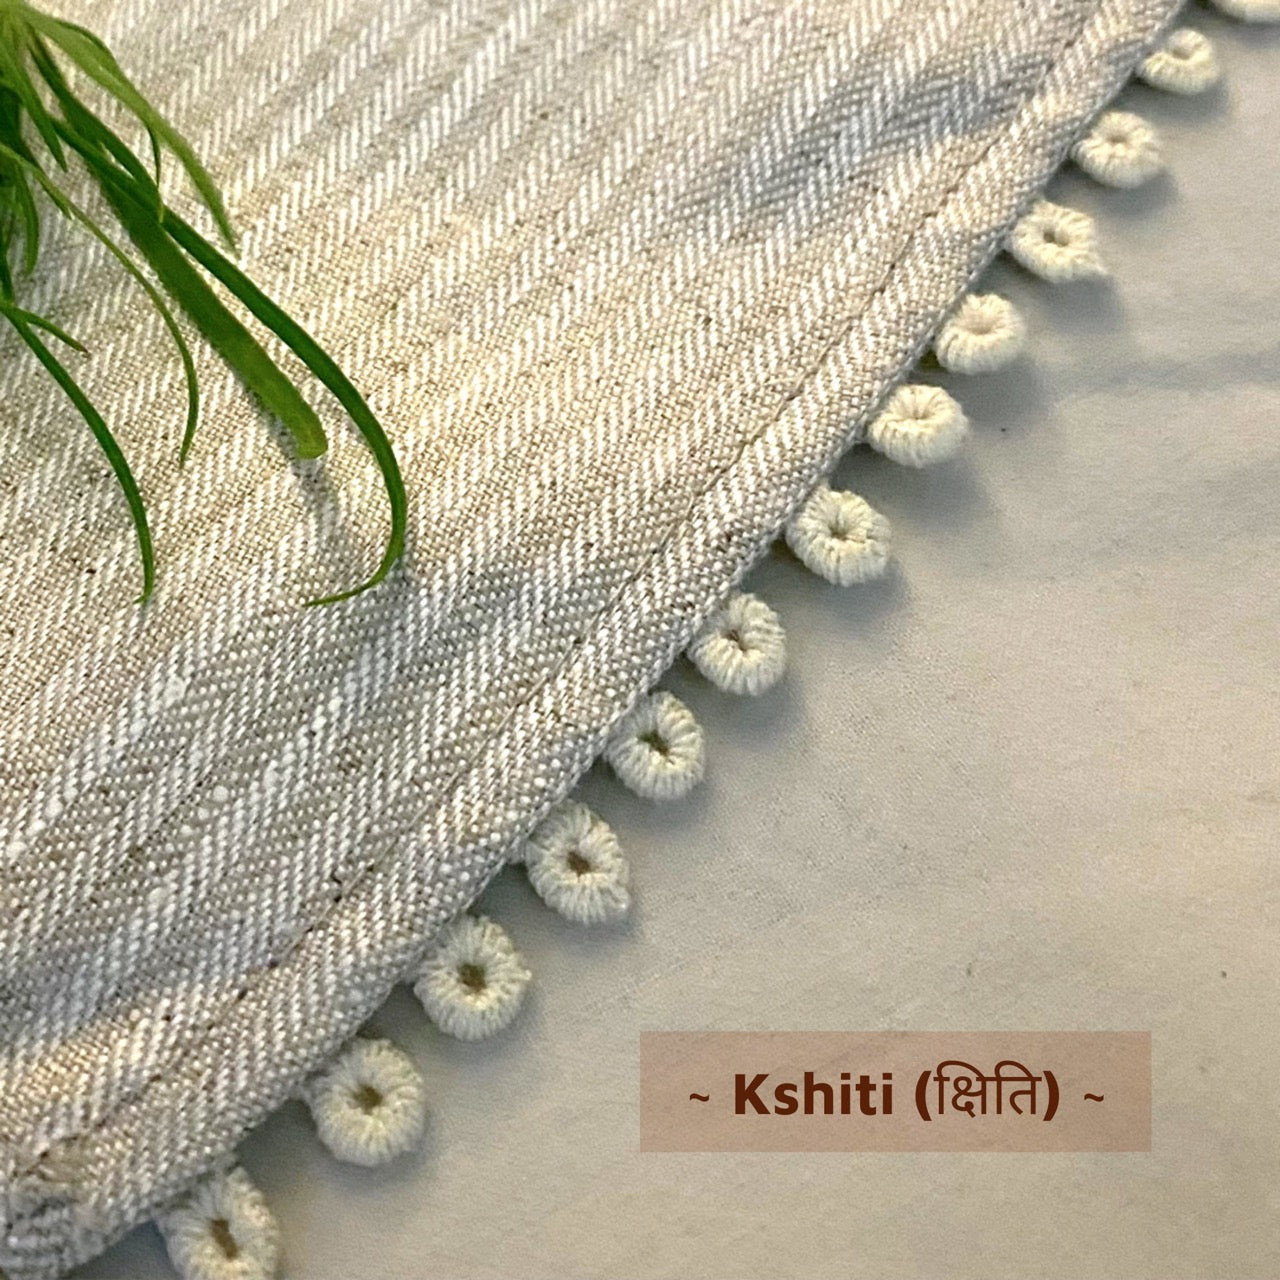 The Bhūmi set - 100% hemp table linen set